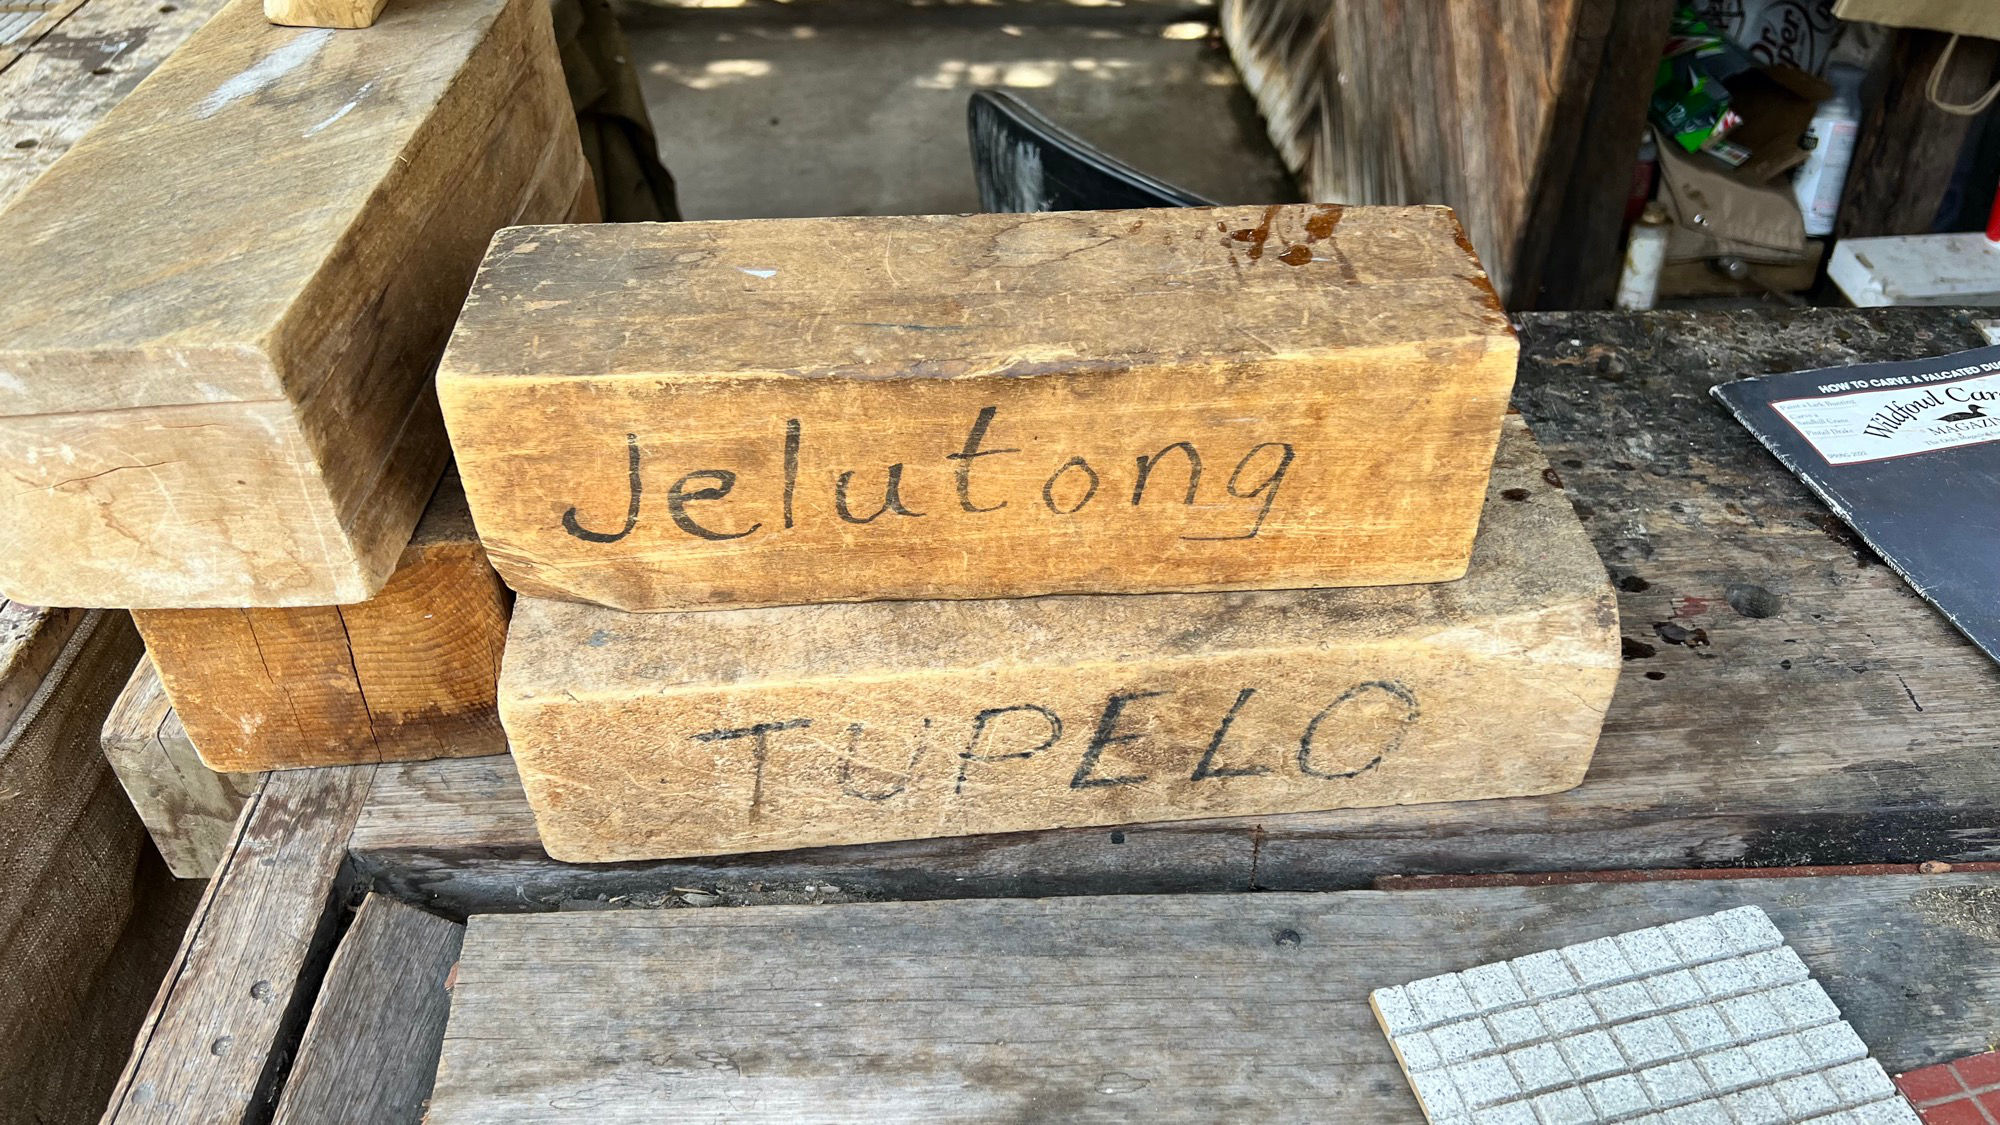 Wood Carver Bob Weir Jelutong Tupelo